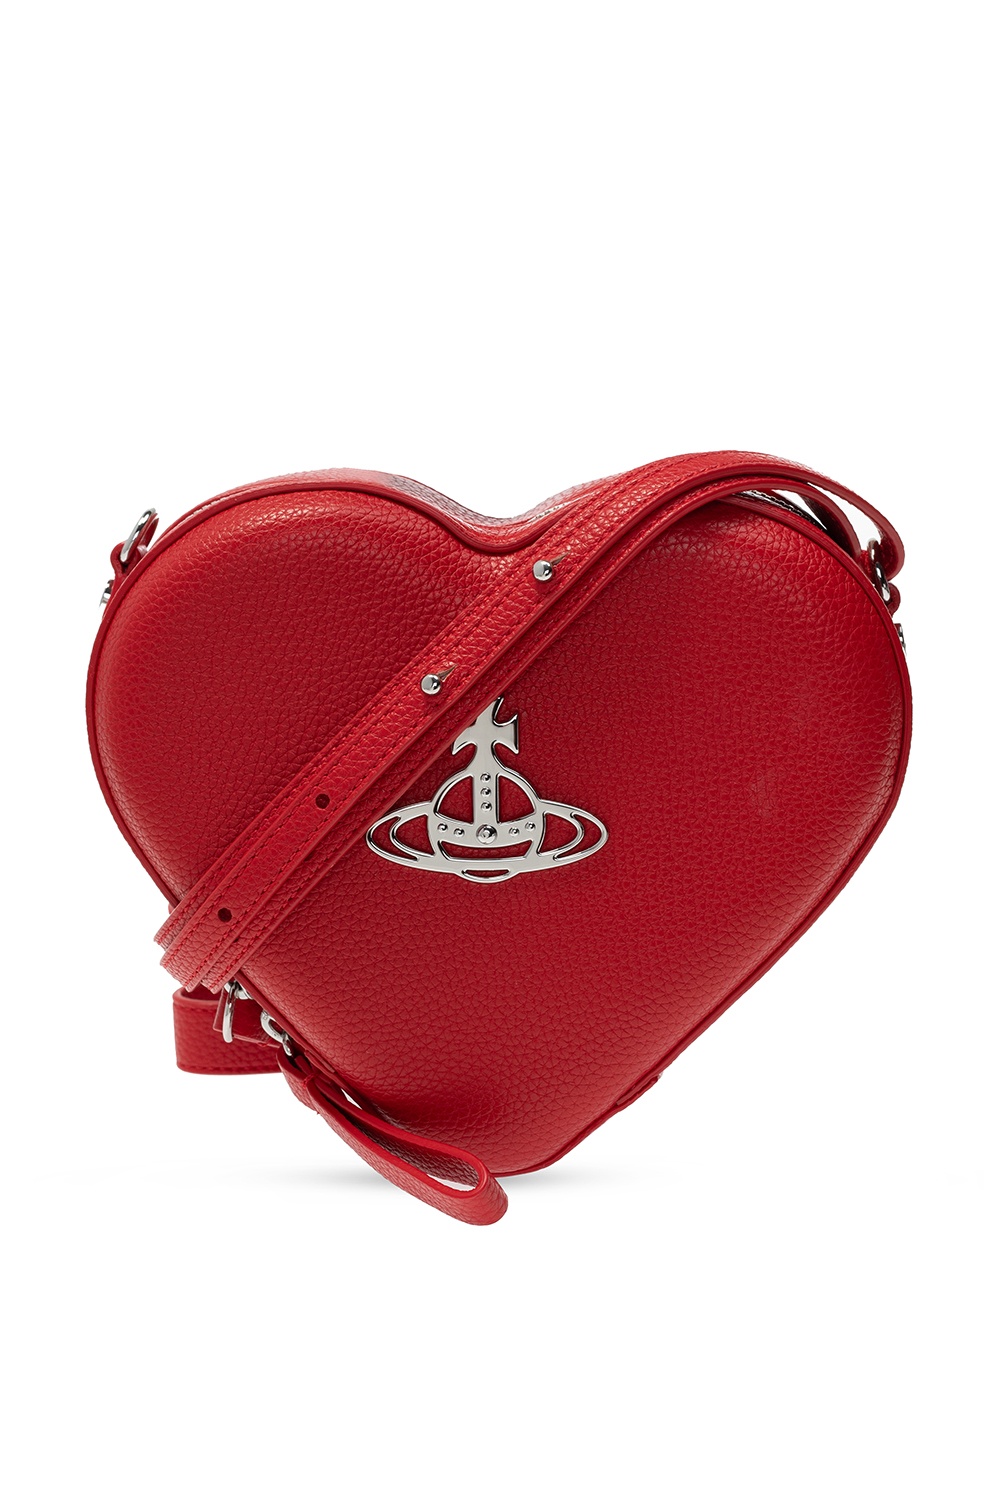 VIVIENNE WESTWOOD PASTEL PINK HEART BAG  Vivienne westwood bags, Heart  shaped bag, Heart bag